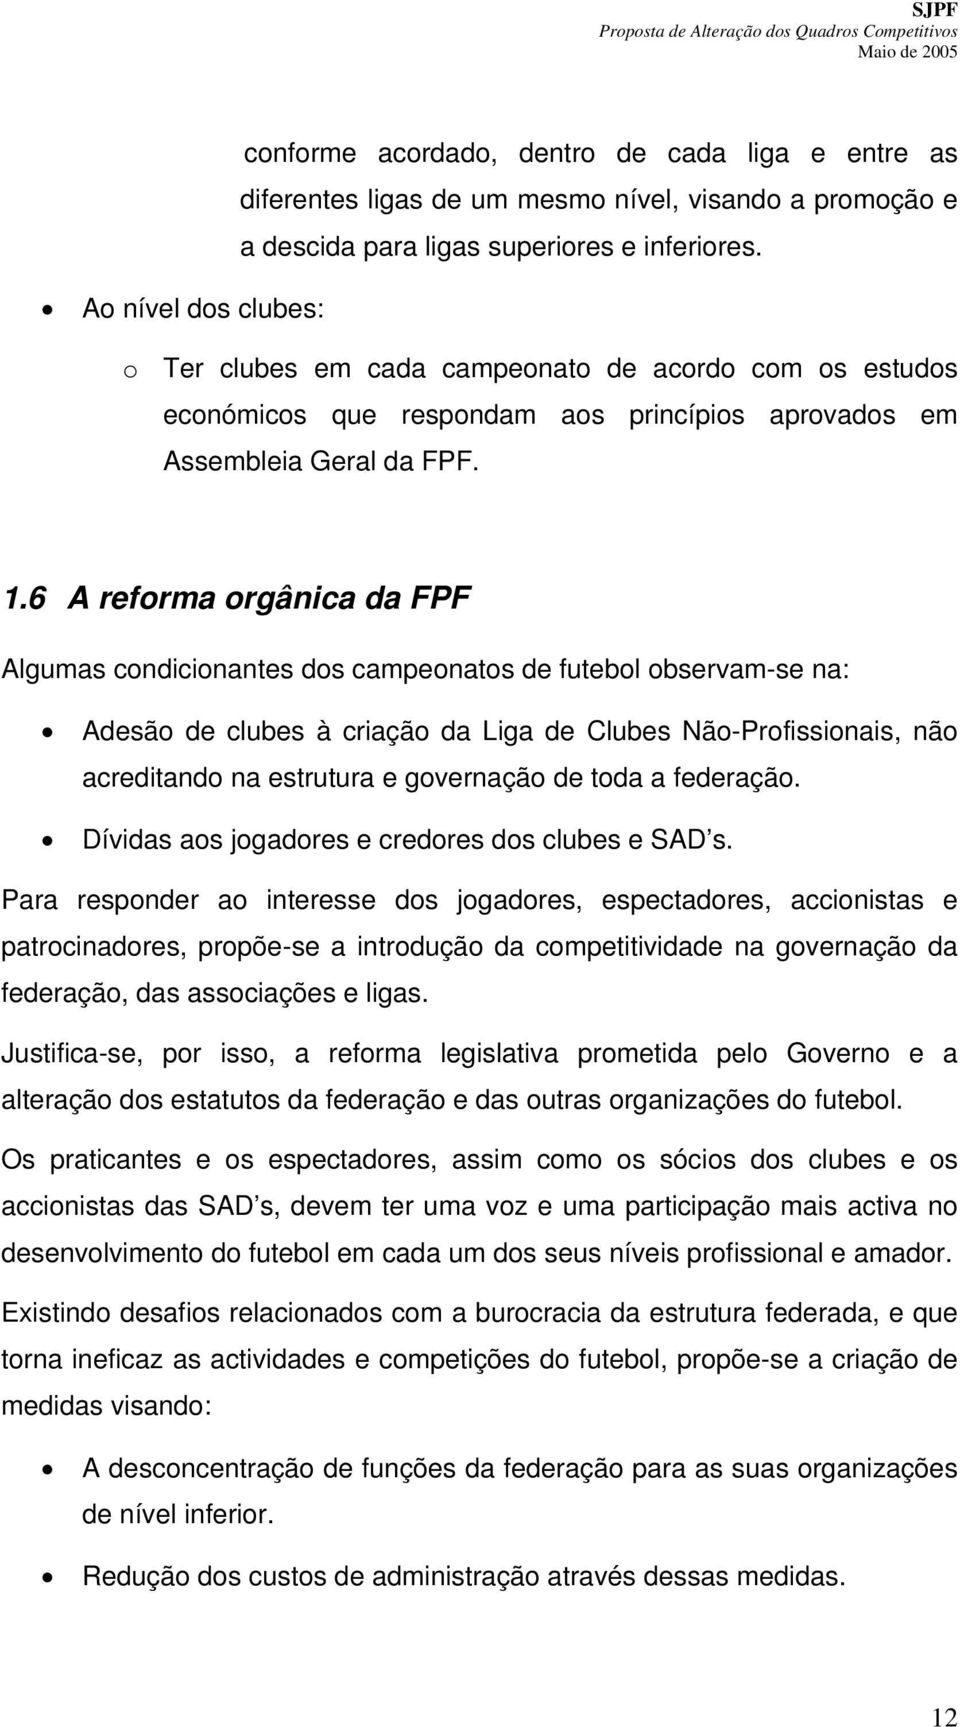 6 A reforma orgânica da FPF Algumas condicionantes dos campeonatos de futebol observam-se na: Adesão de clubes à criação da Liga de Clubes Não-Profissionais, não acreditando na estrutura e governação